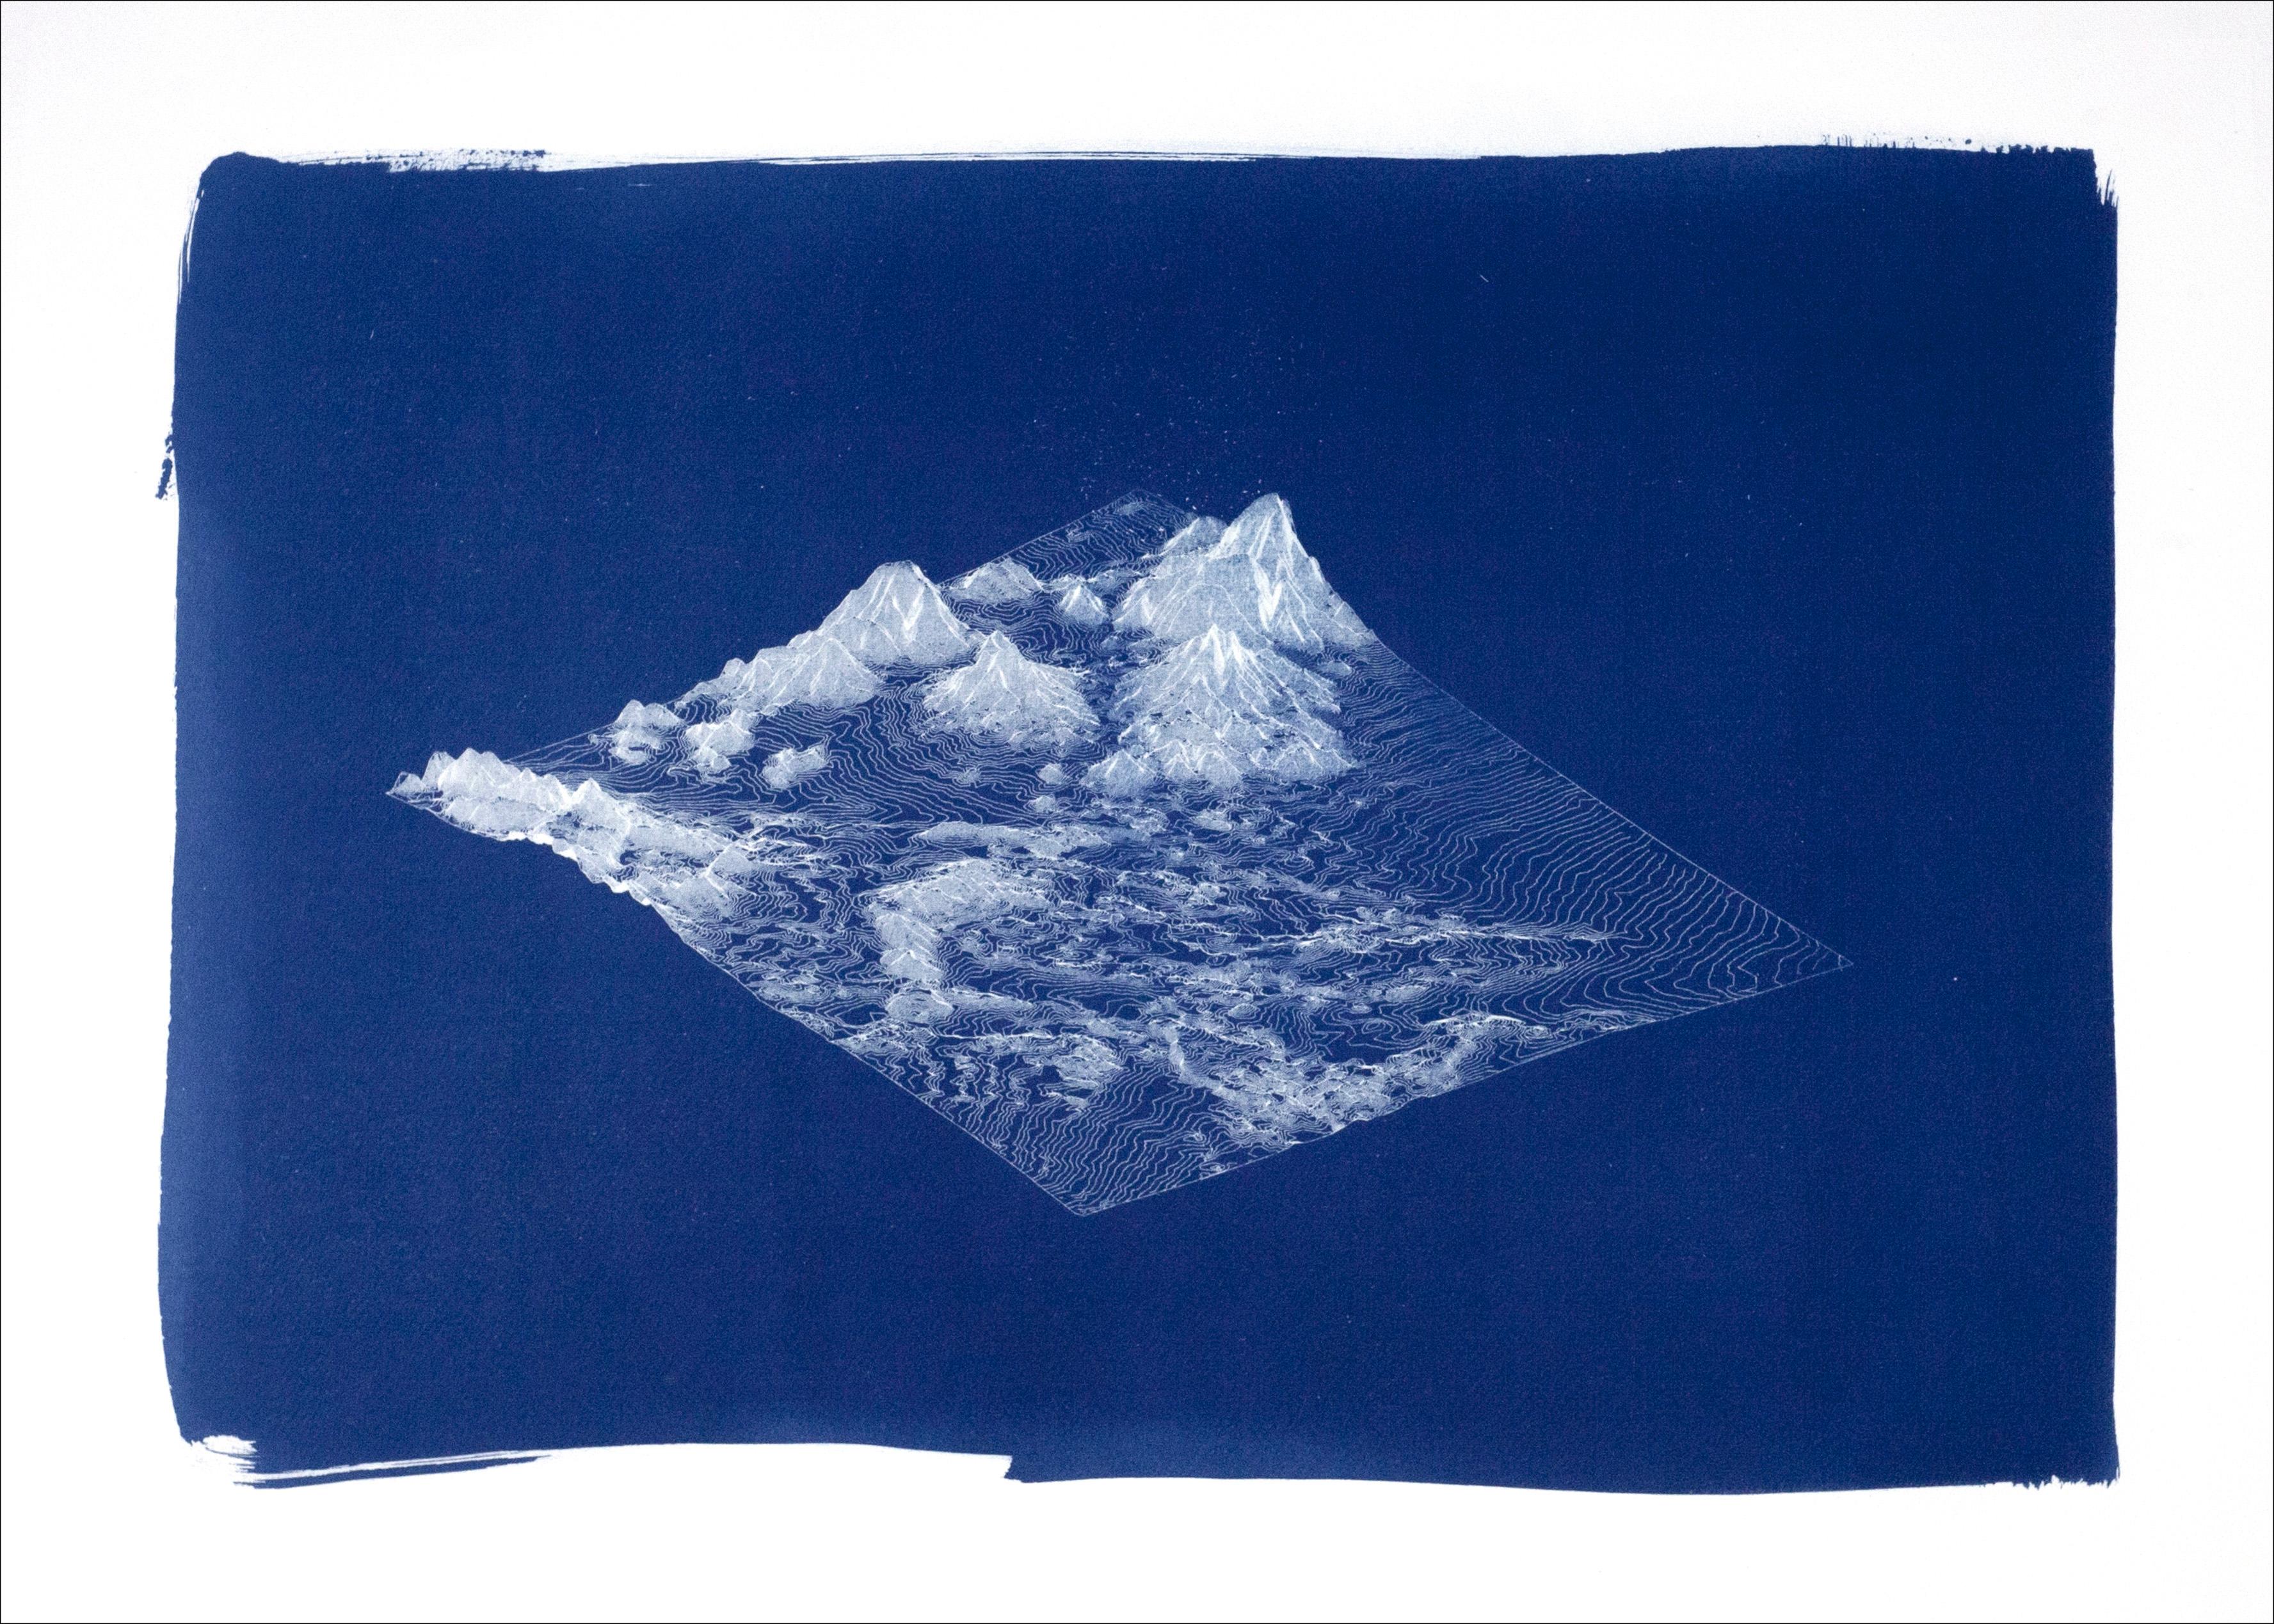 Rendu 3D - Paysage de montagne en 3D, cyanotype fait à la main dans des tons bleu profond, minimaliste 